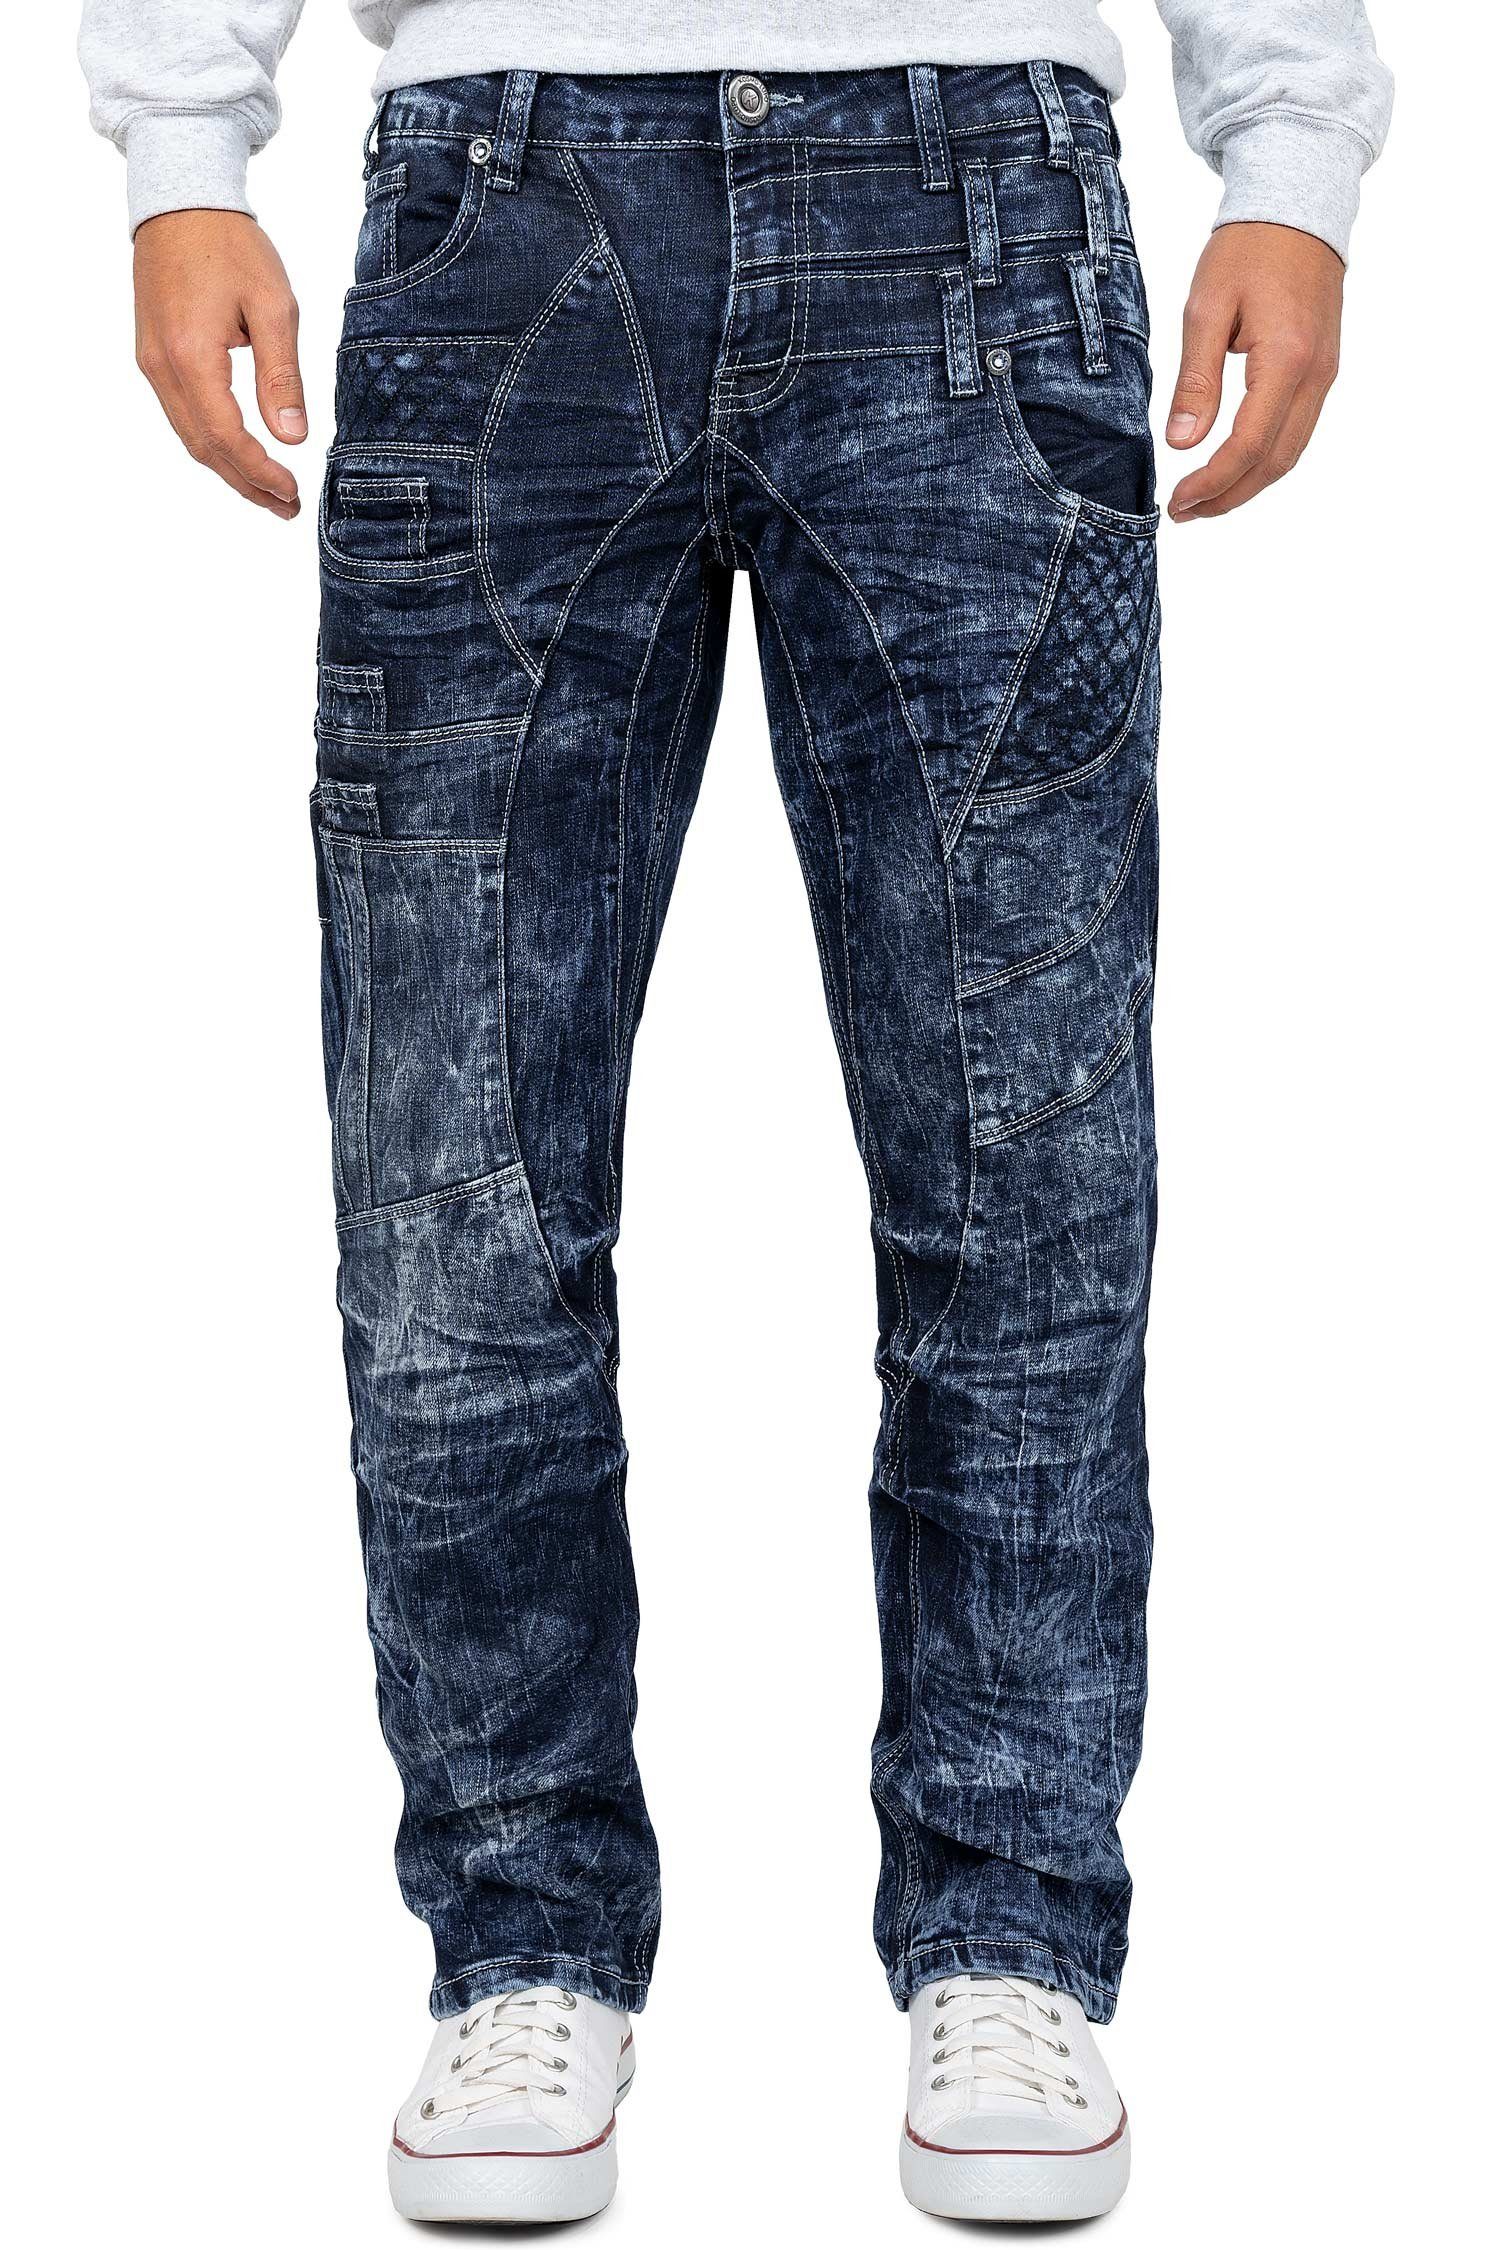 Kosmo Lupo 5-Pocket-Jeans Auffällige Regular Fit Hose Jeans BA-KM006 mit Verzierungen